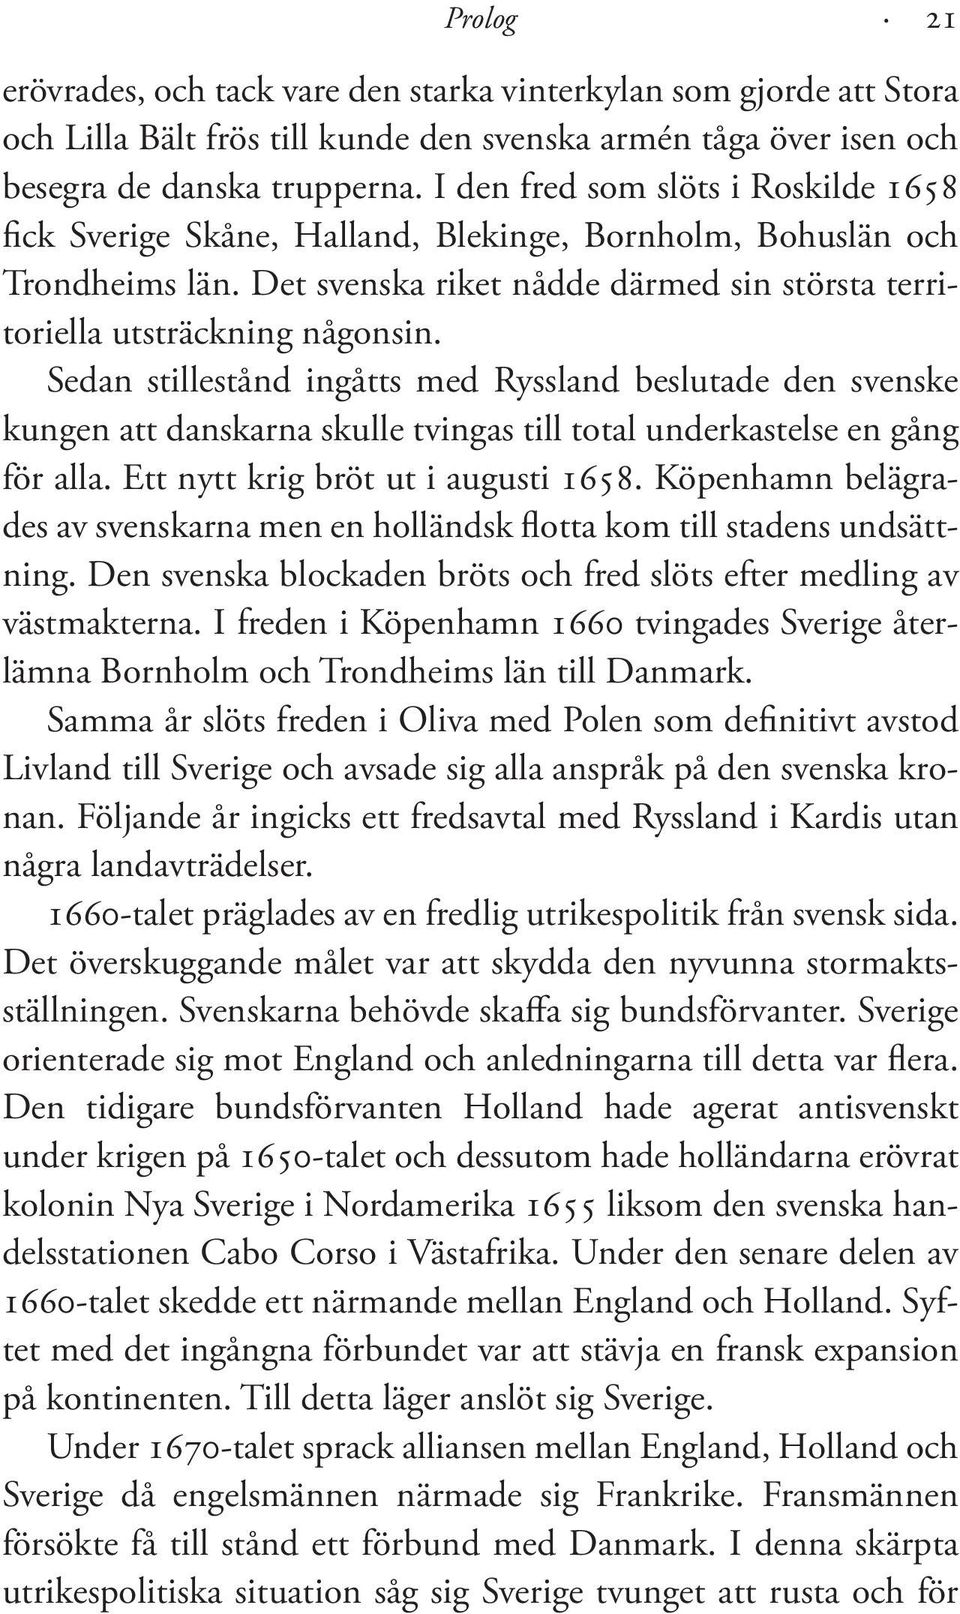 Sedan stillestånd ingåtts med Ryssland beslutade den svenske kungen att danskarna skulle tvingas till total underkastelse en gång för alla. Ett nytt krig bröt ut i augusti 1658.